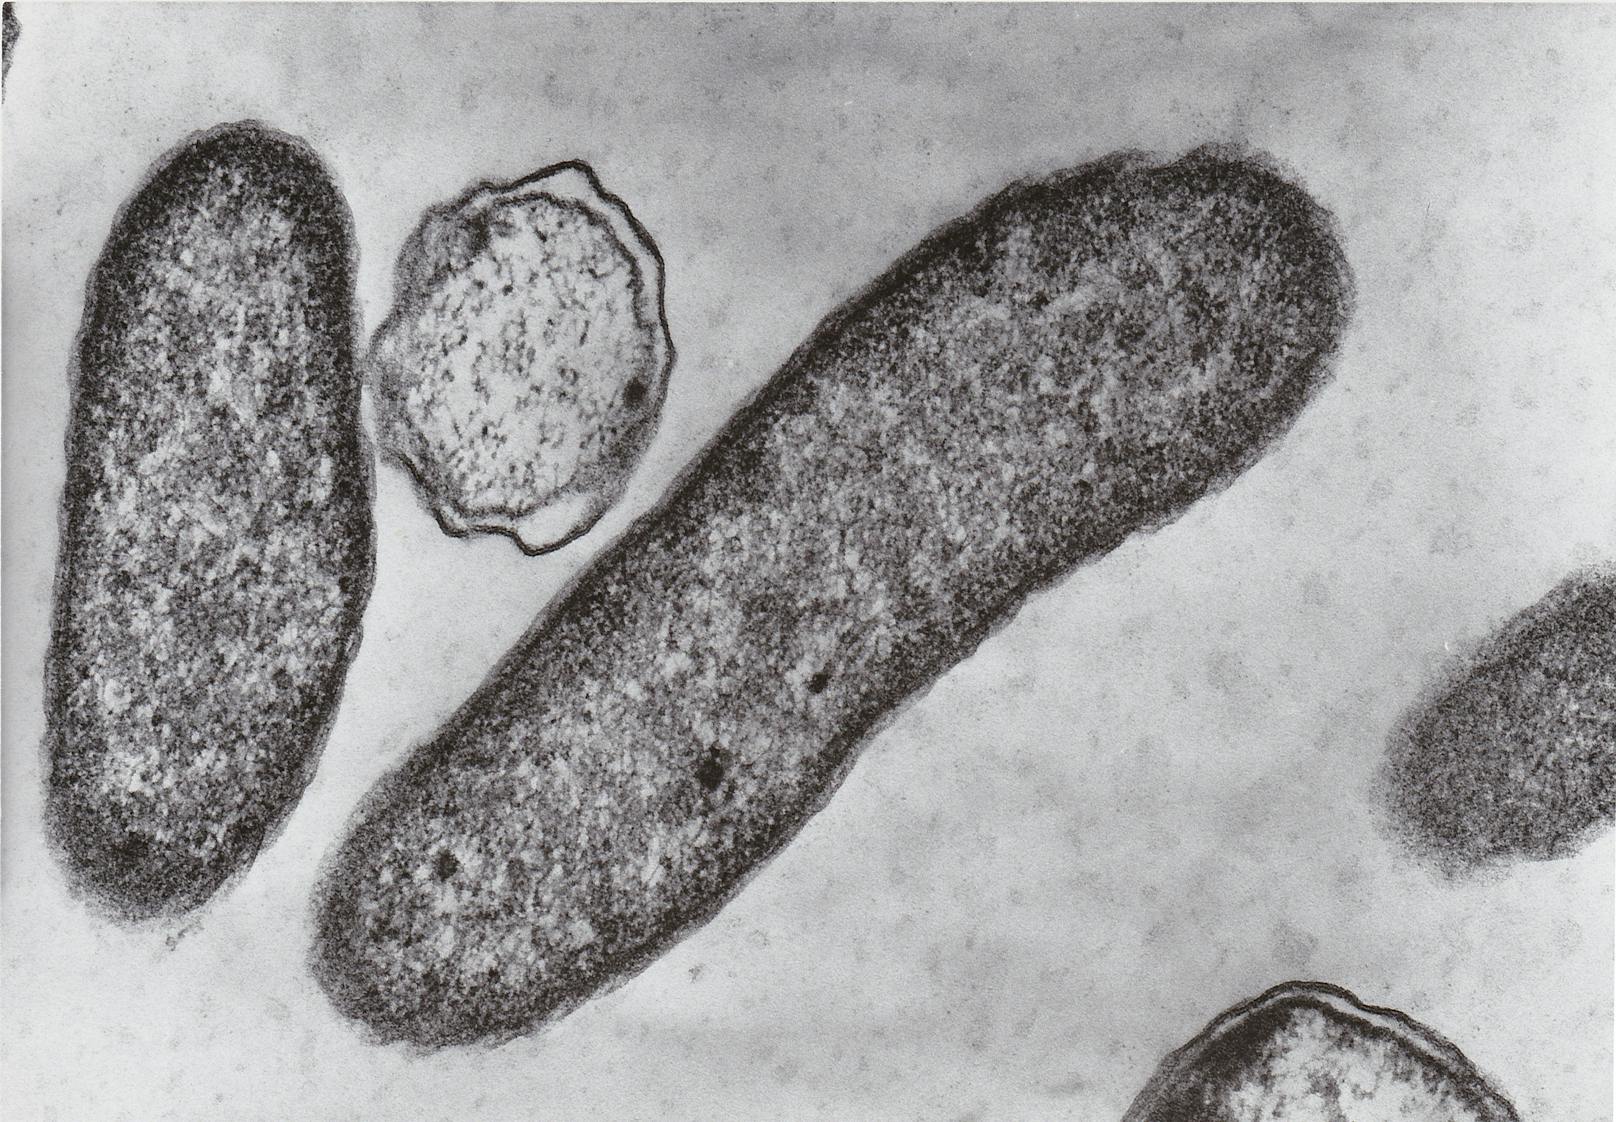 Fleischfressende Bakterien – Mann nach Bad in Ostsee tot